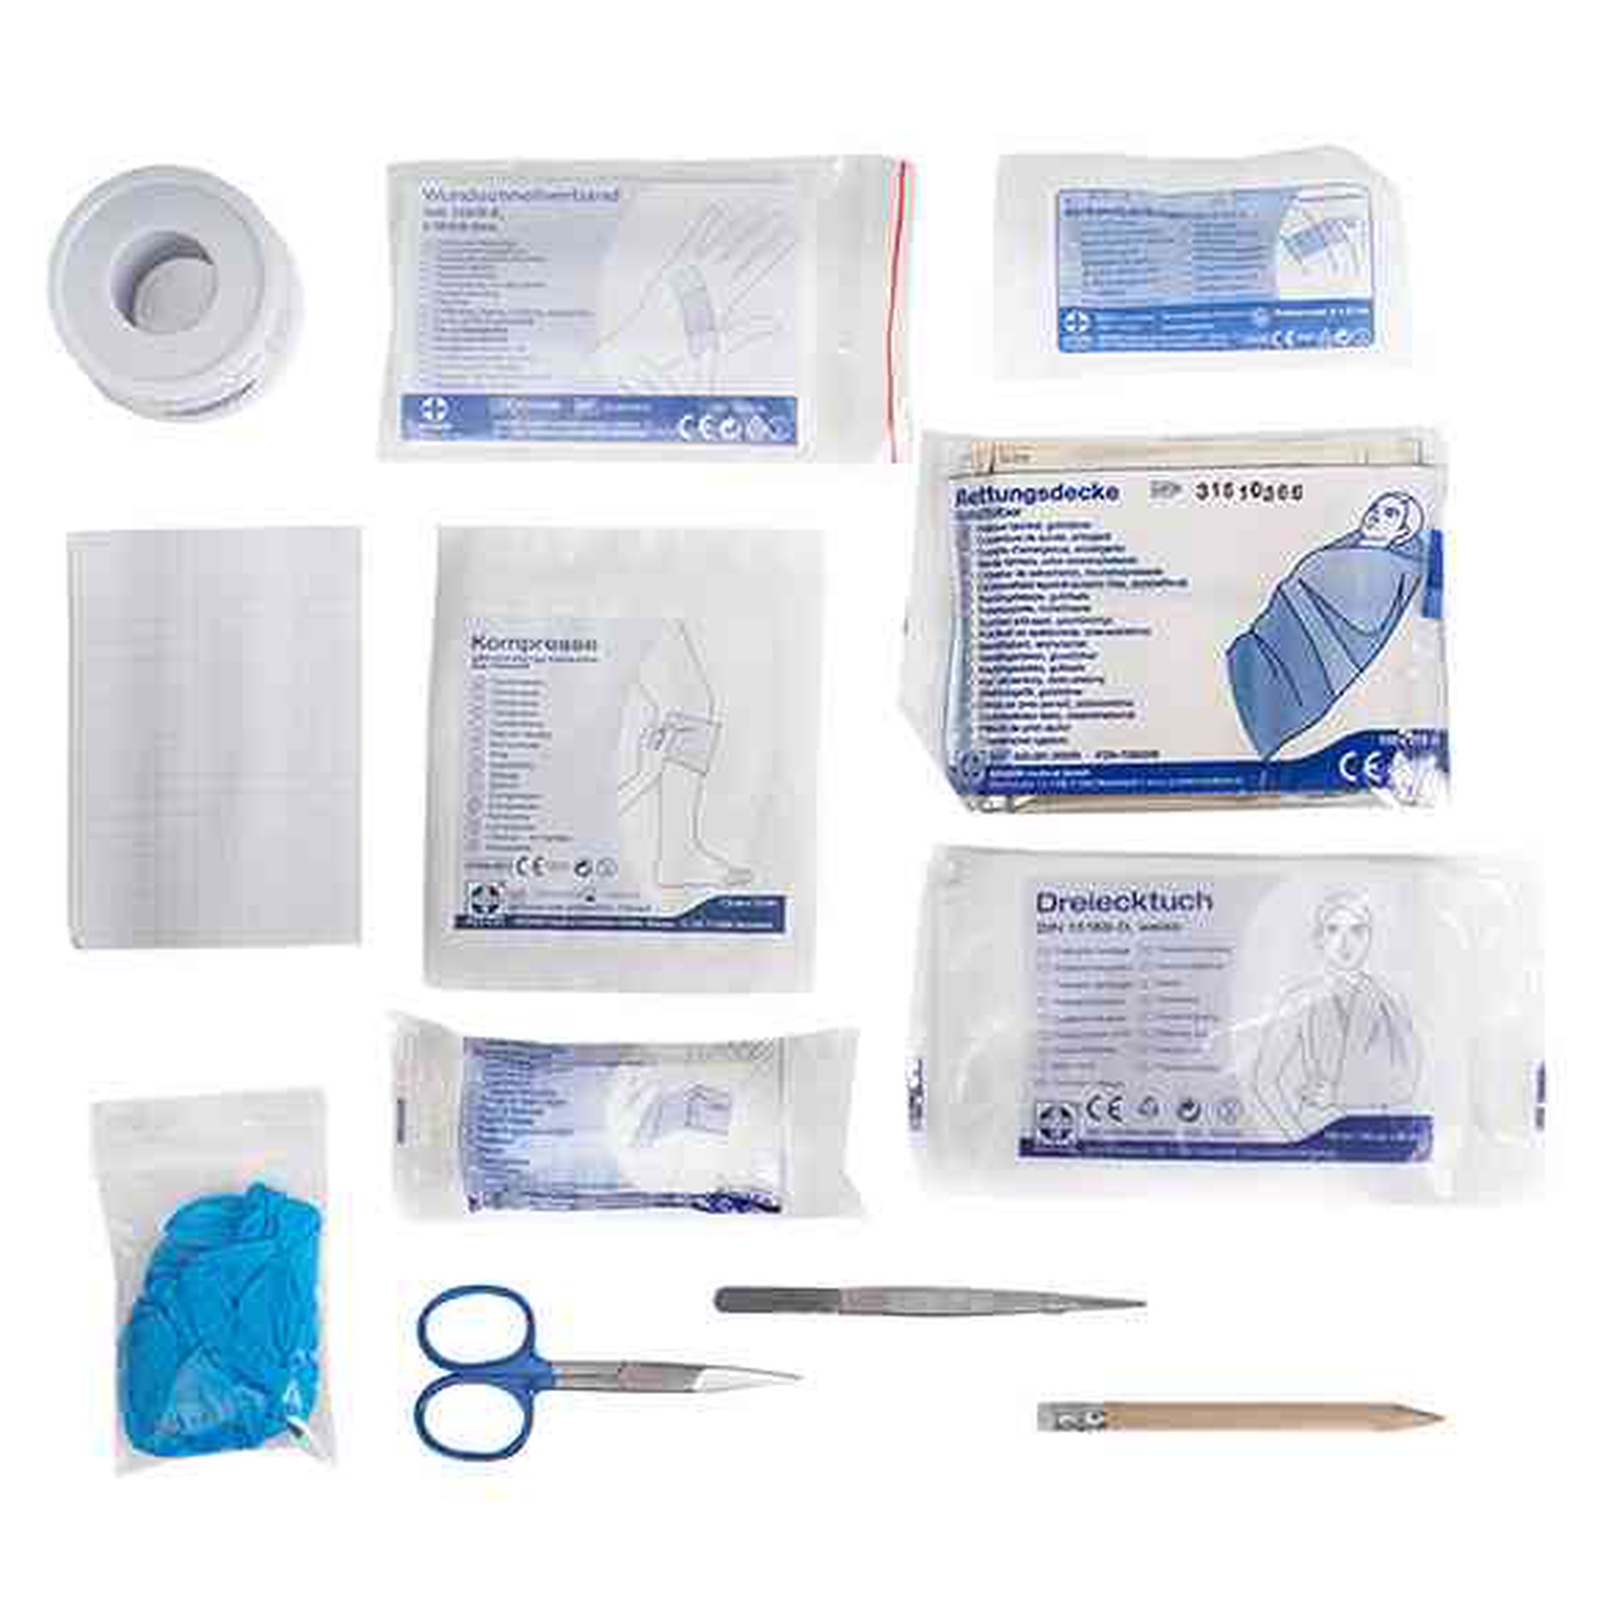 First Aid Kit 1.5L